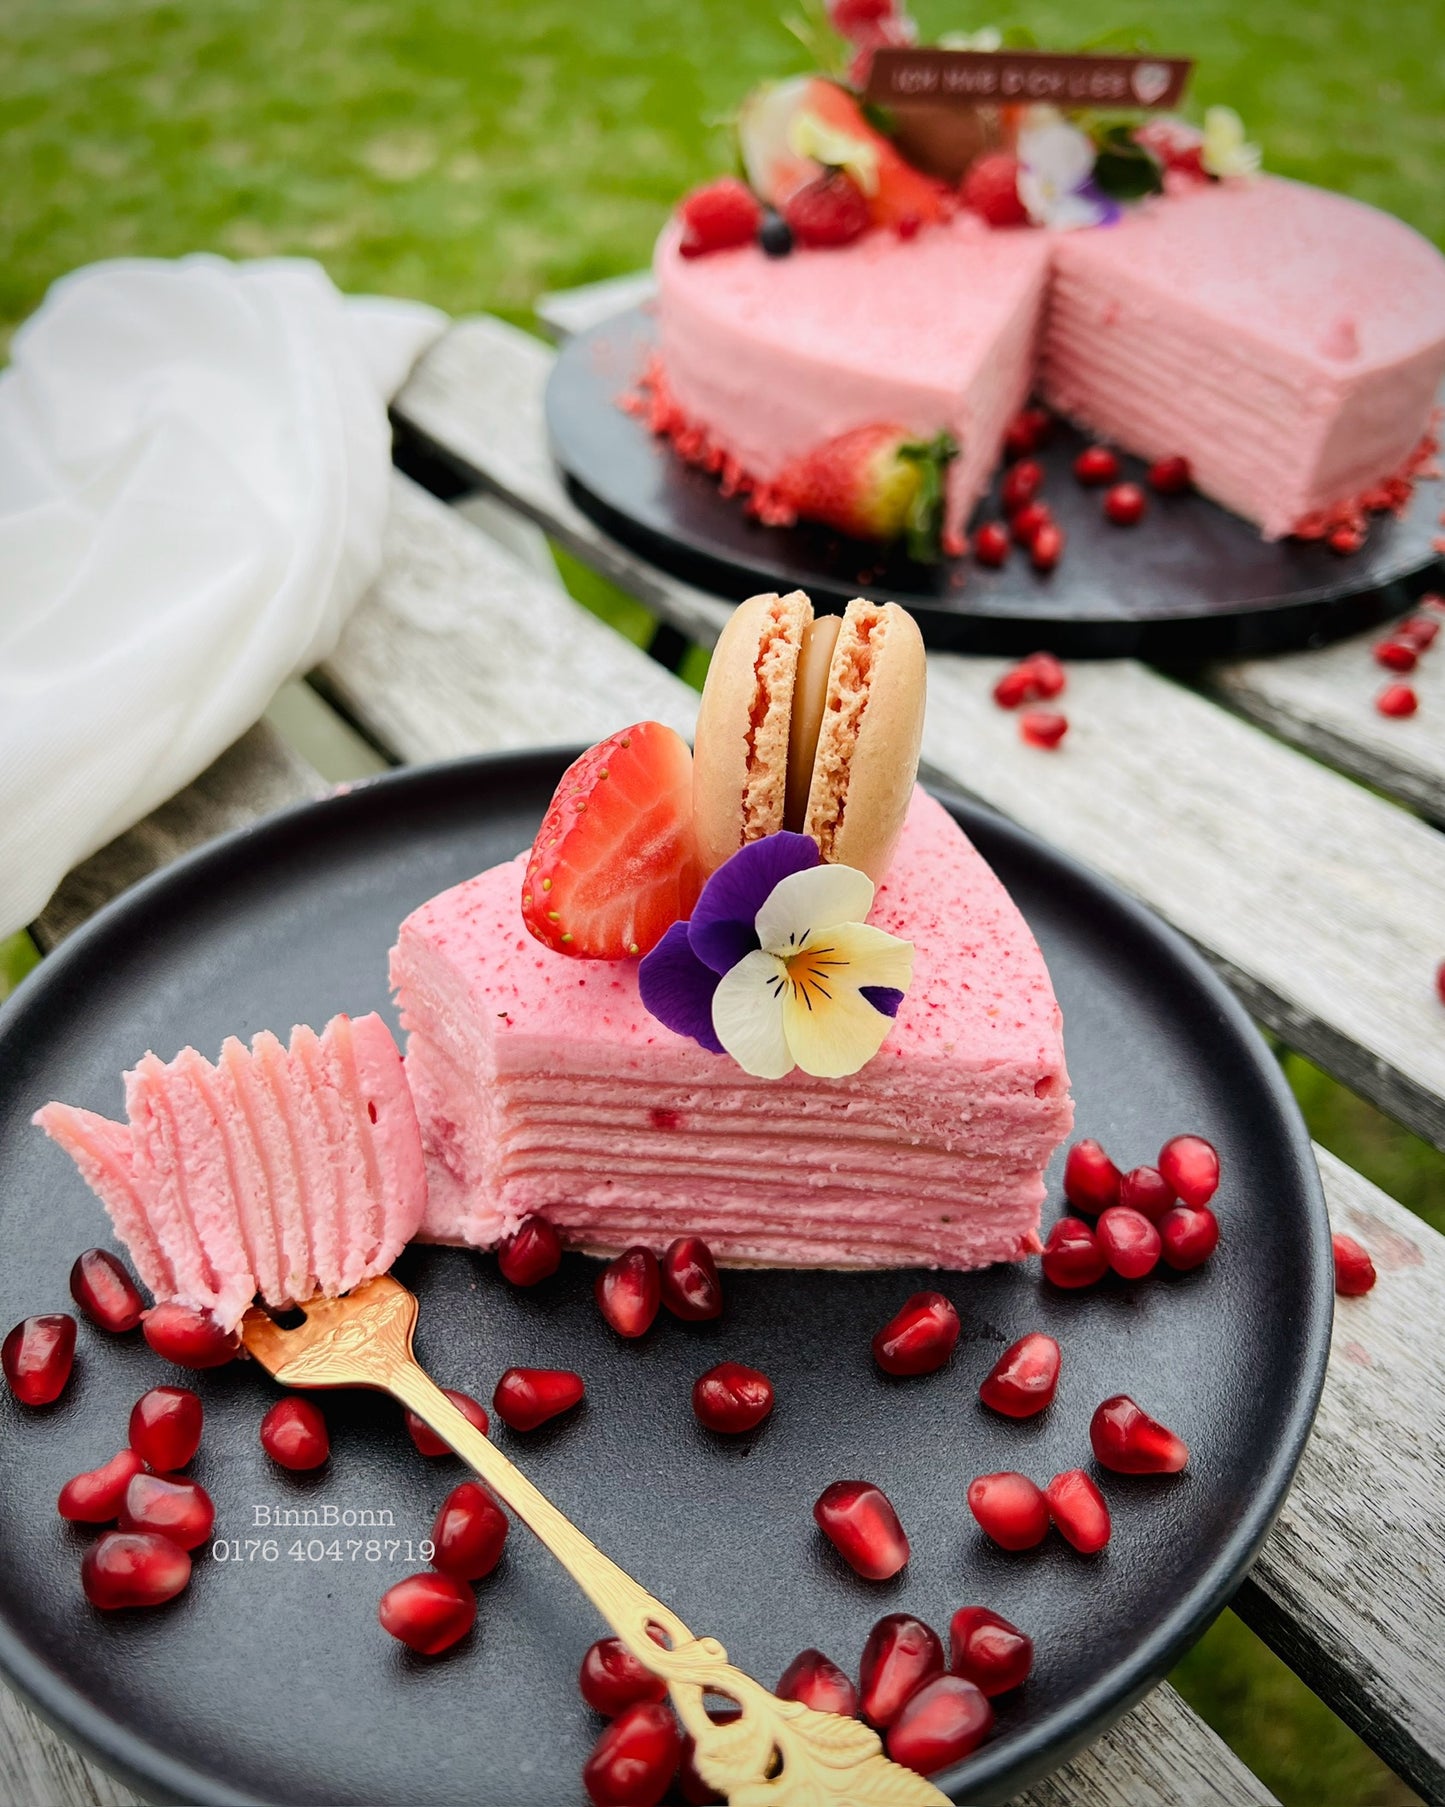 50. Torte "Strawberry Crepe" mit Erdbeer-Schlagsahne-Frischkäsecreme 22 cm